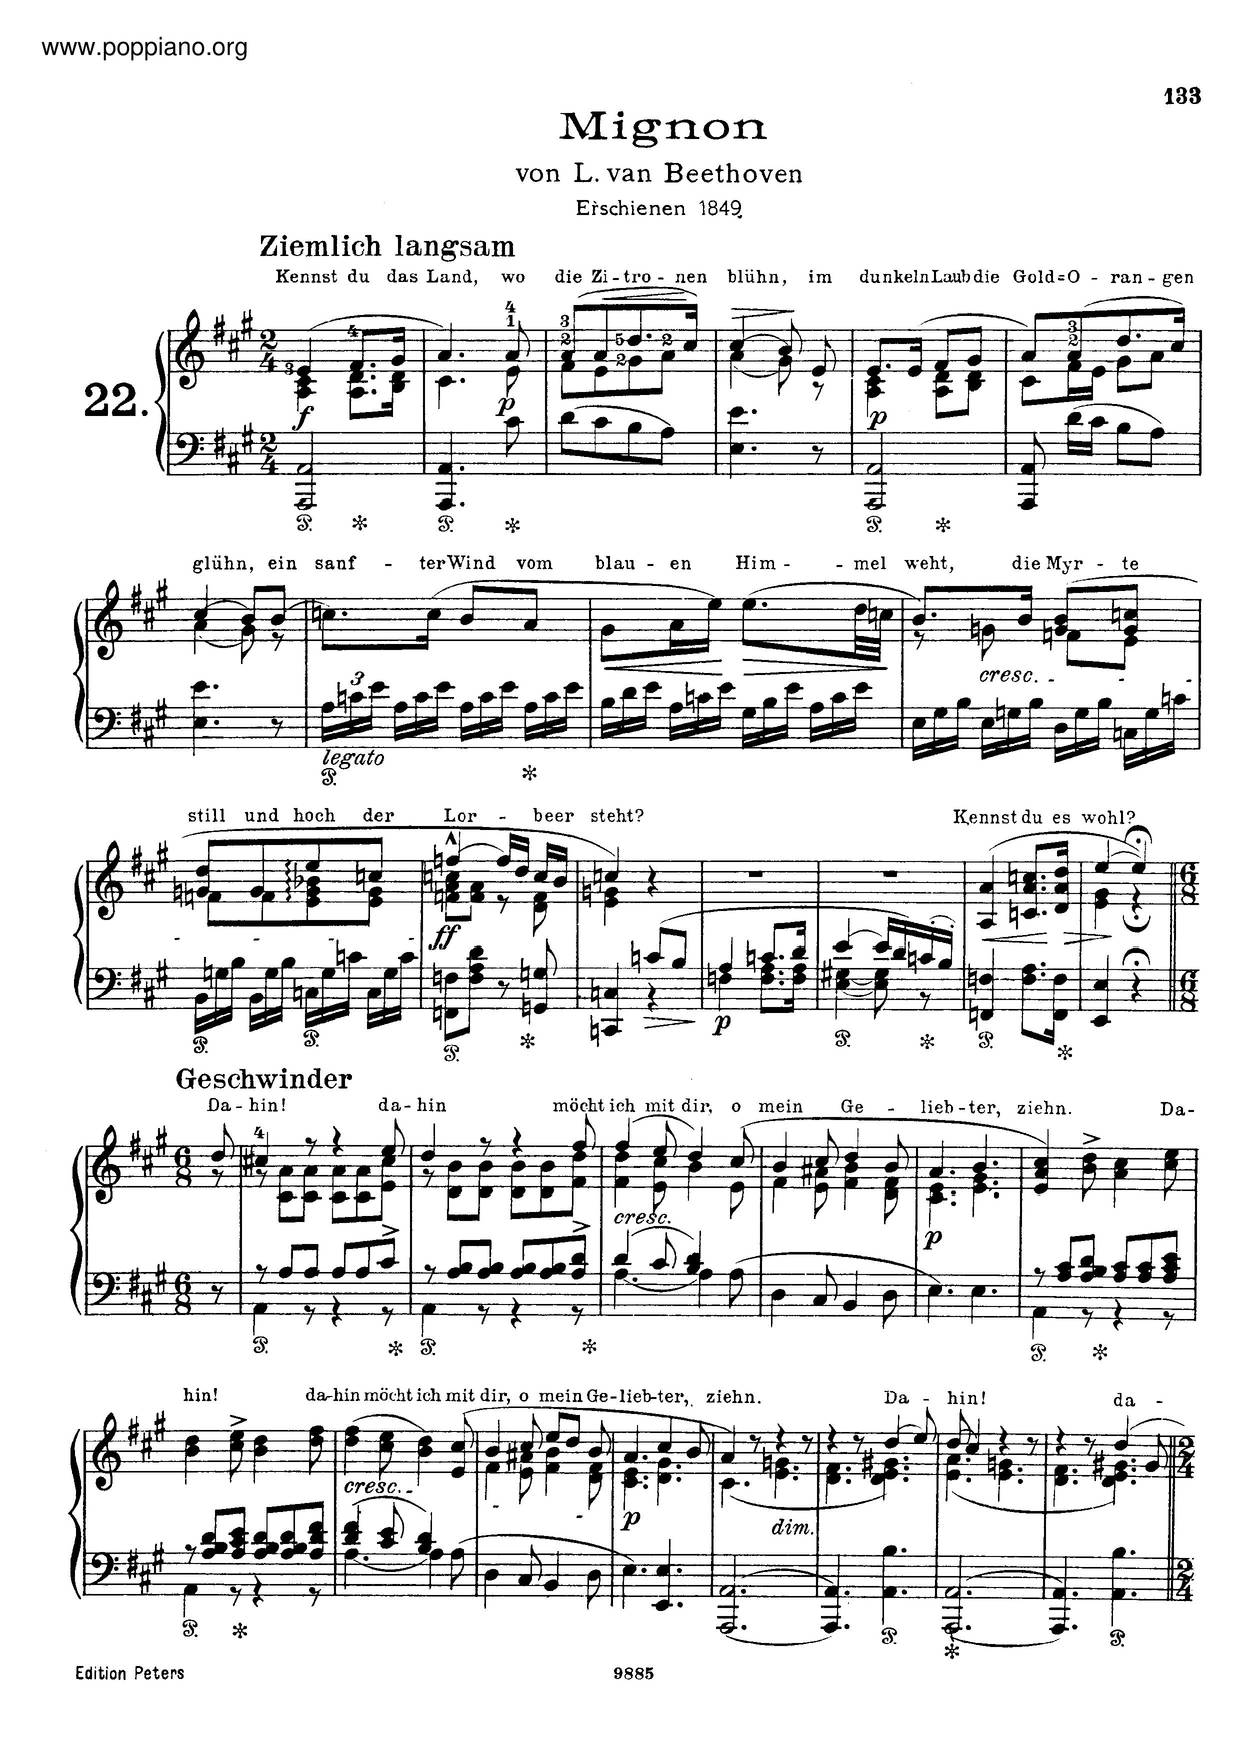 6 Lieder Von Goethe, By Beethoven, S.468琴谱